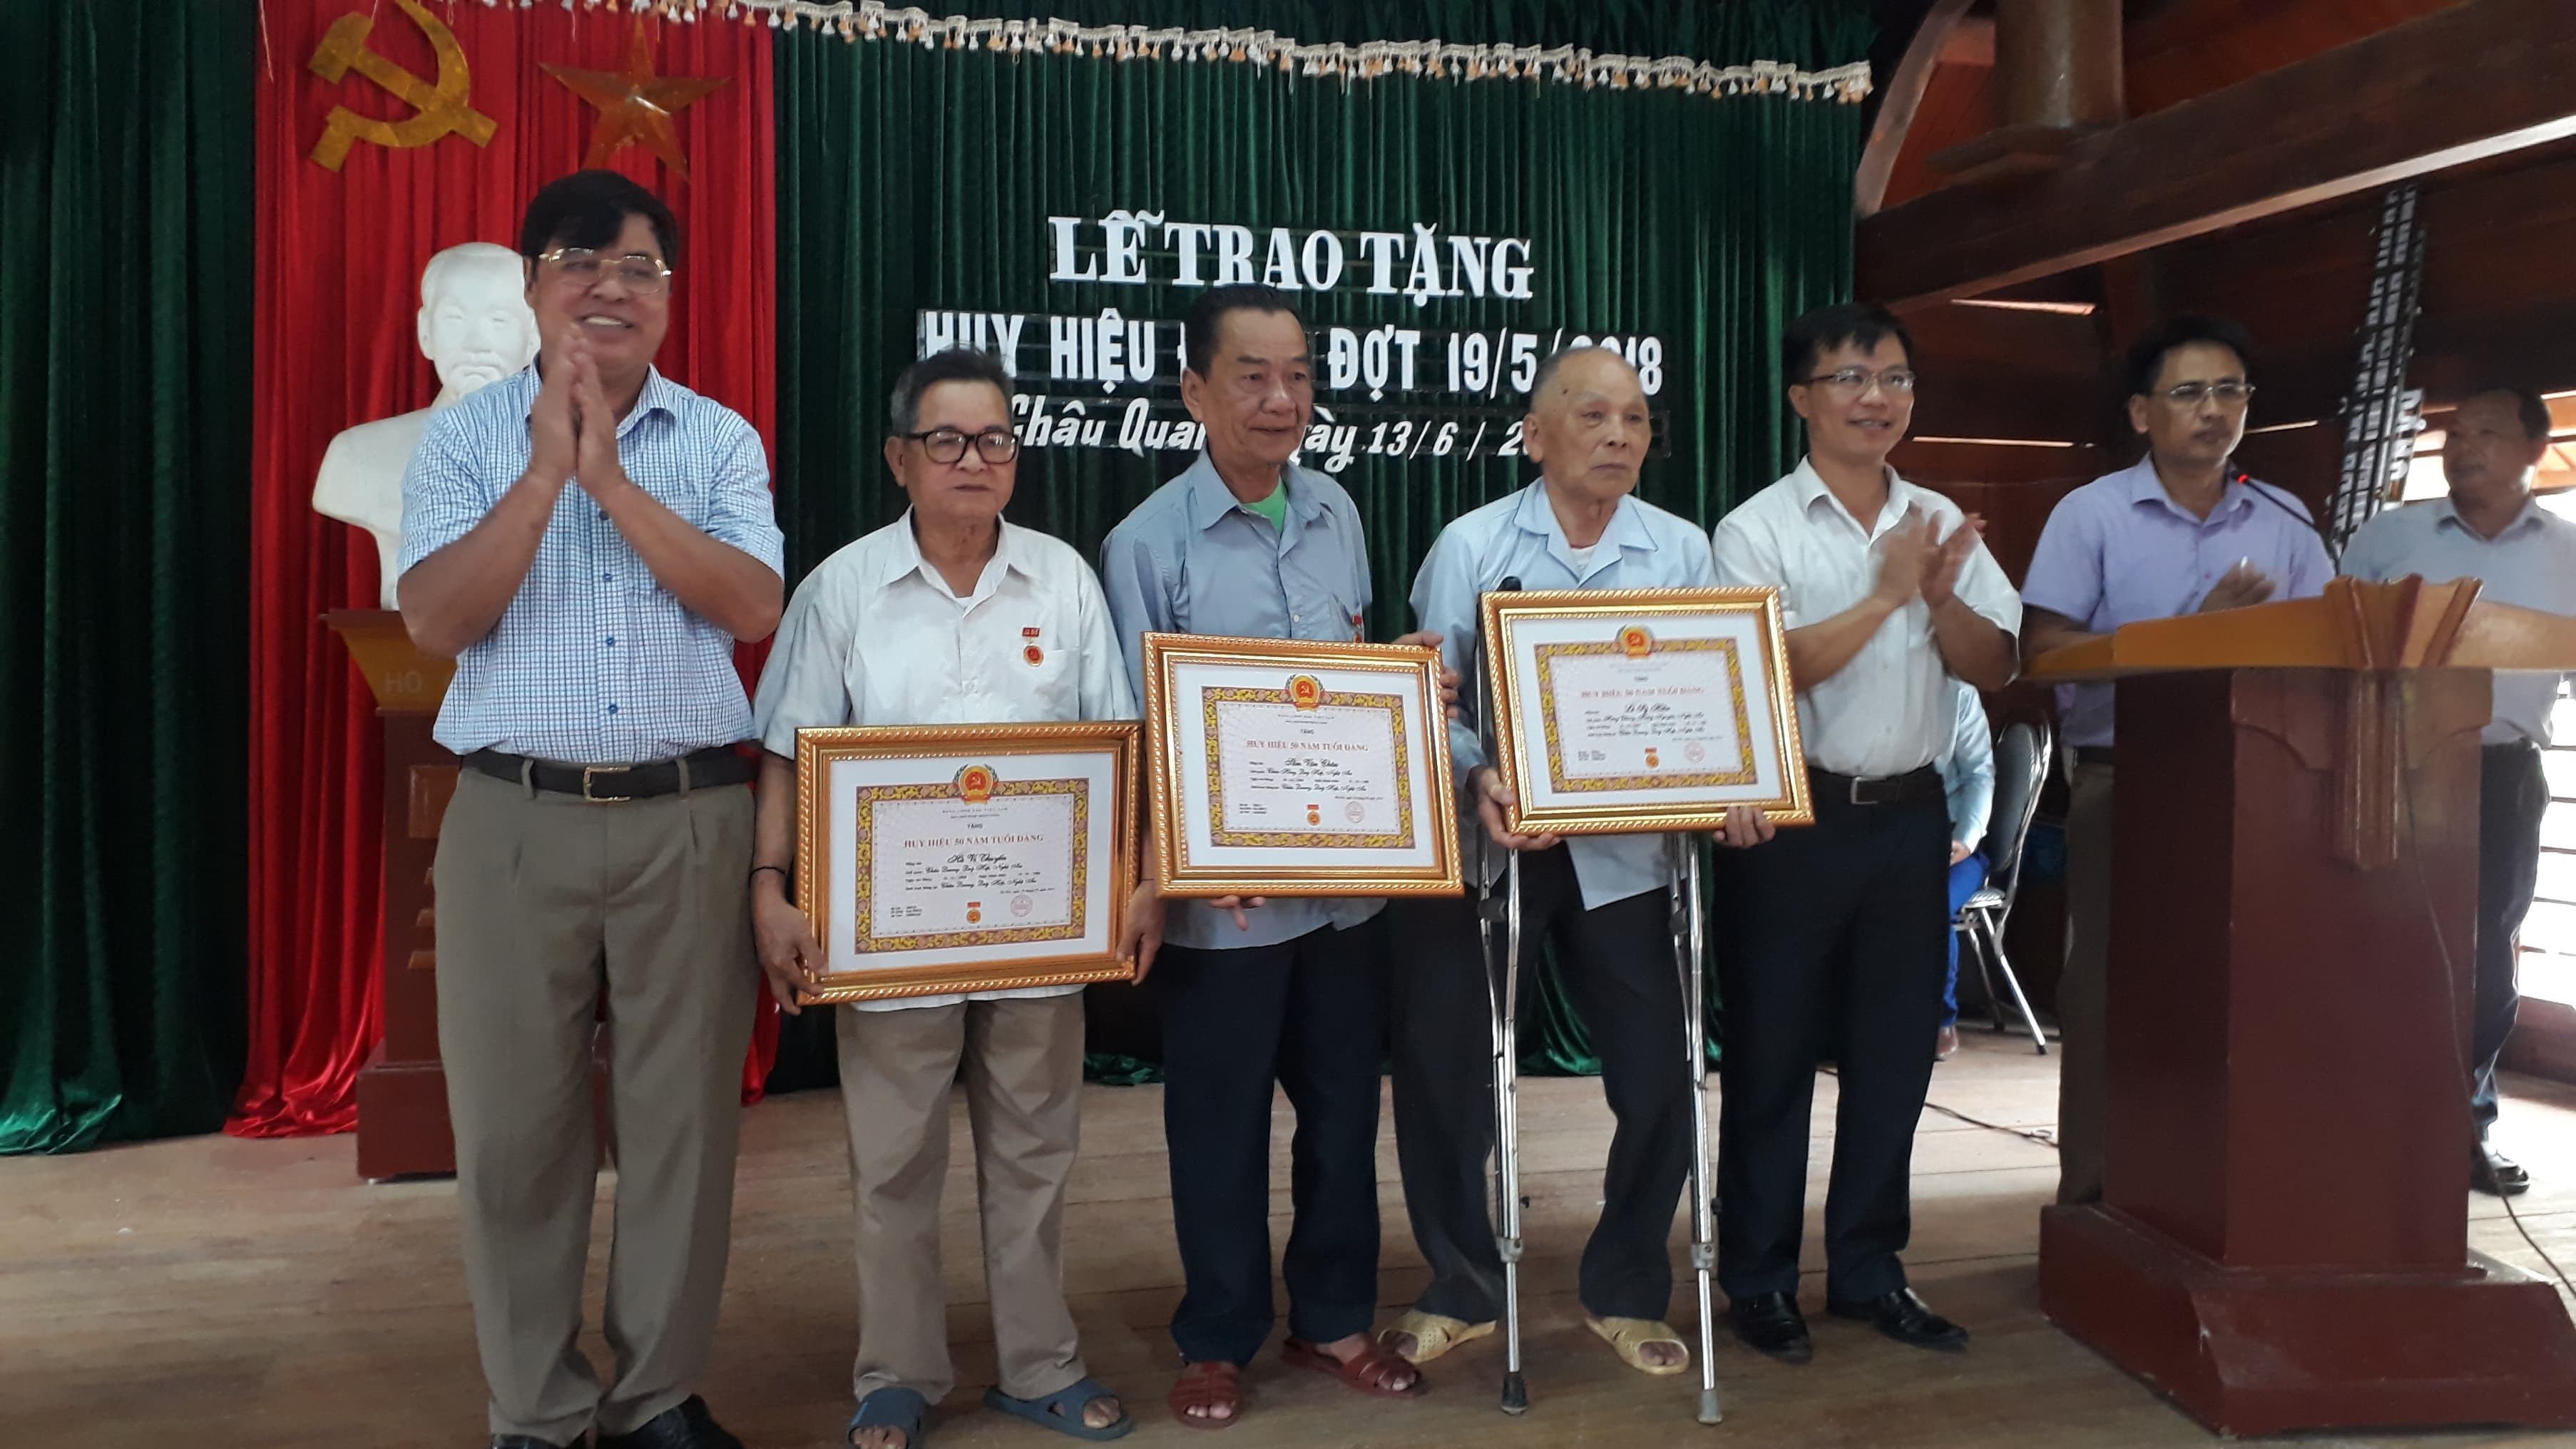 Trao tặng huy hiệu đảng cho các đảng viên tại Châu Quang, Quỳ Hợp. Ảnh: Thu Hường